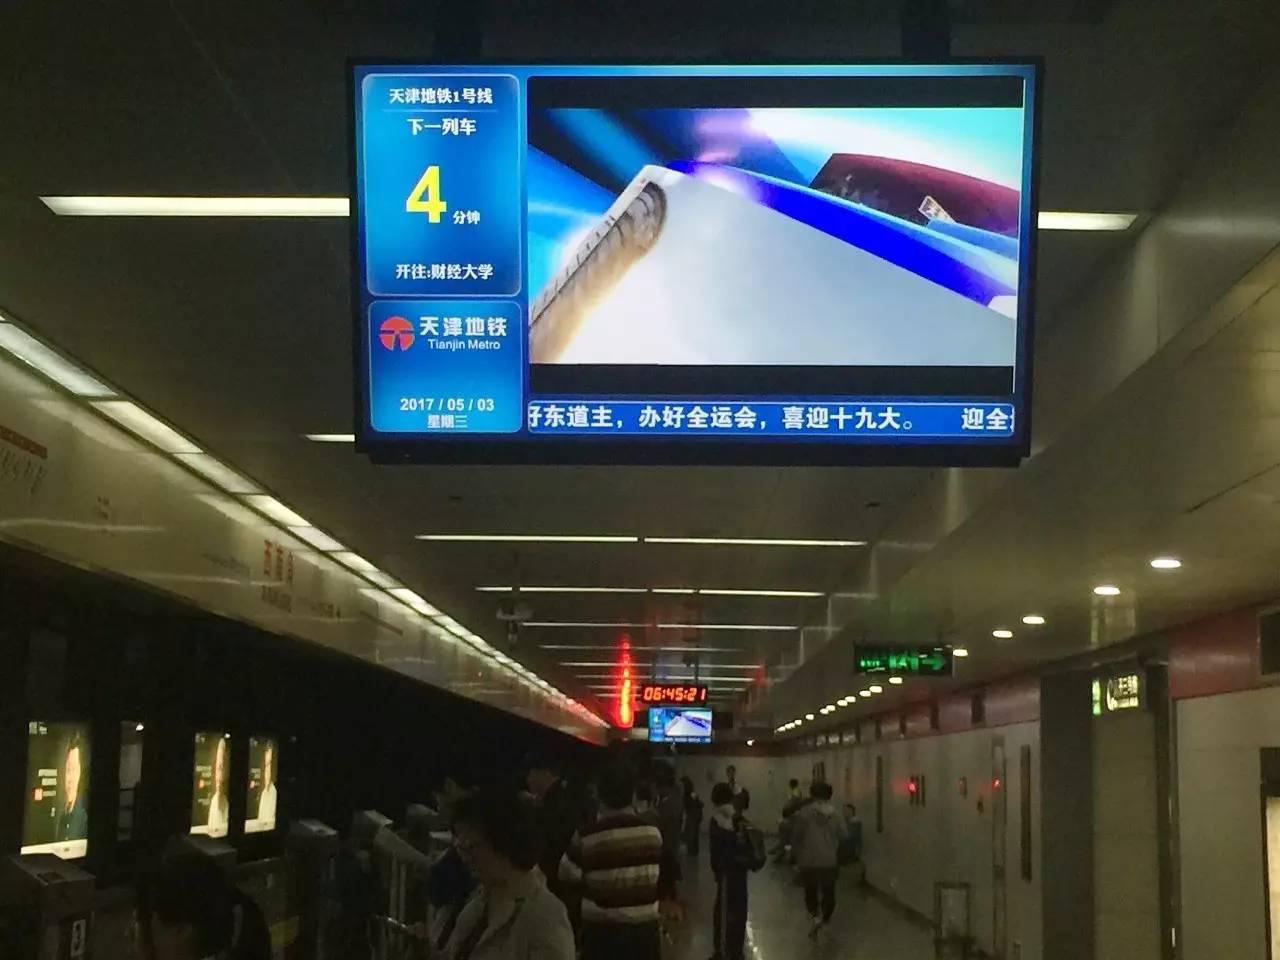 1号线车站电视屏幕完成升级改造 